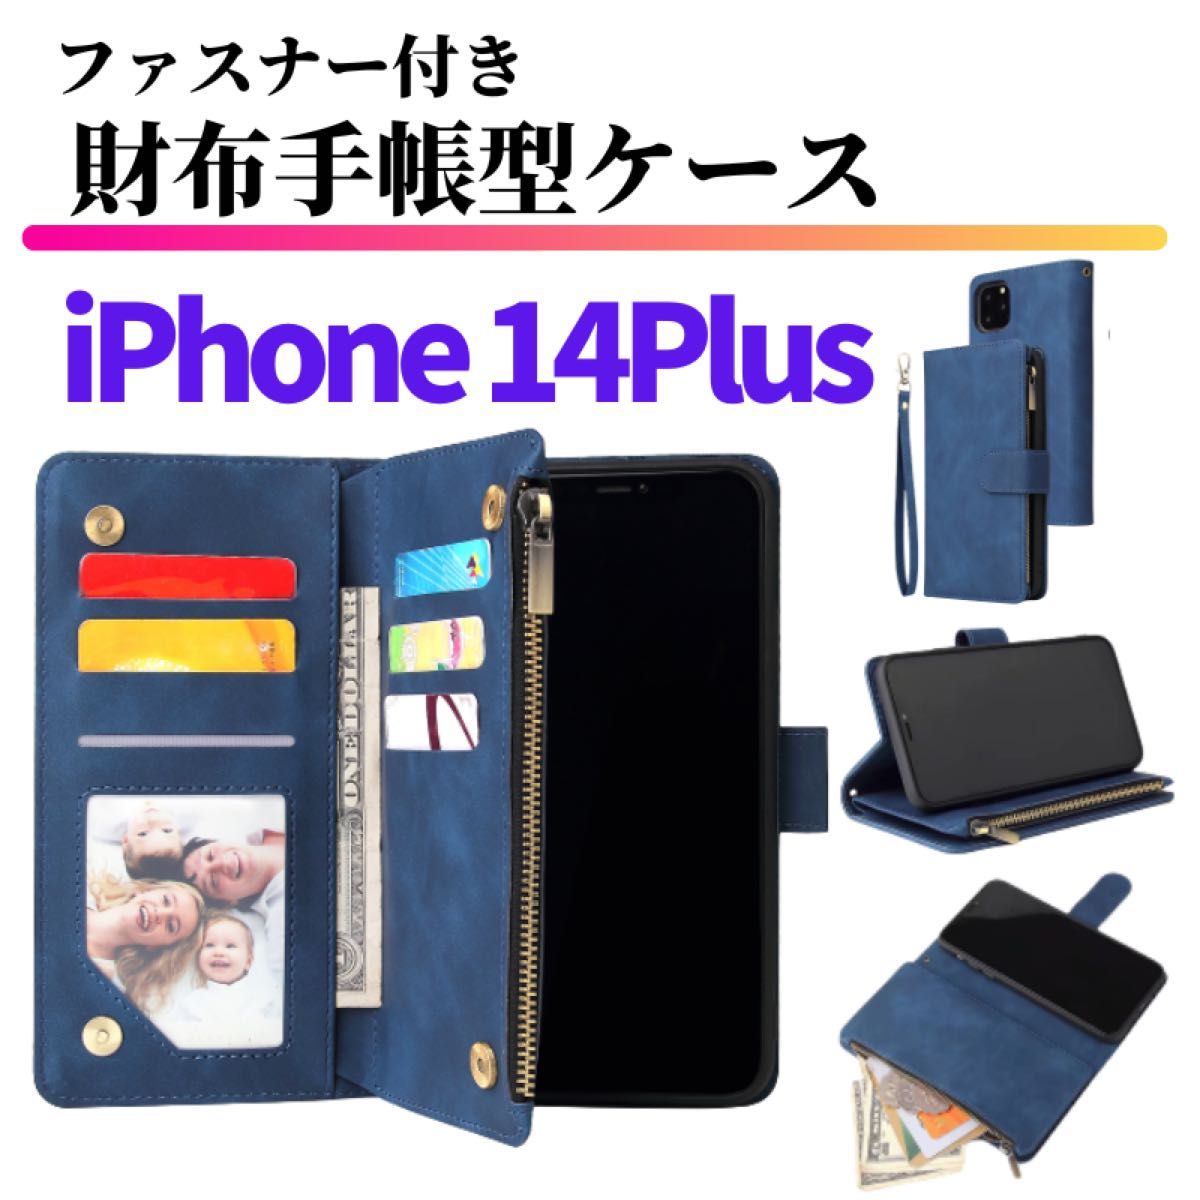 iPhone 14Plus ケース 手帳型 お財布 レザー カードケース ジップファスナー収納付 おしゃれ アイフォン ブルー